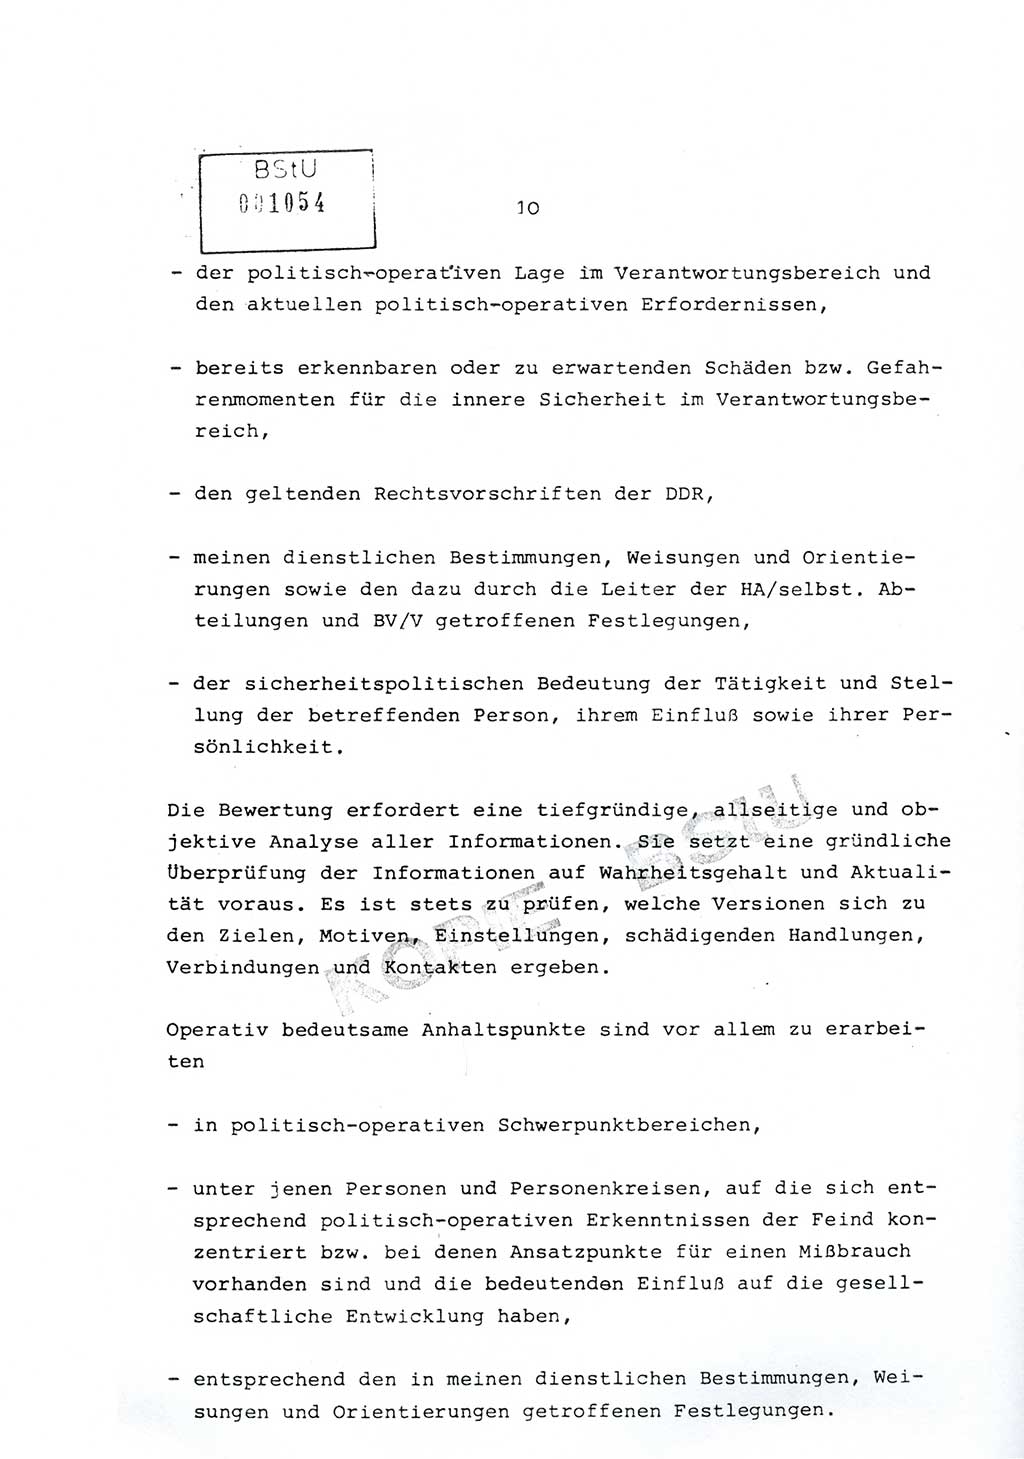 Richtlinie Nr. 1/81 über die operative Personenkontrolle (OPK), Ministerium für Staatssicherheit (MfS) [Deutsche Demokratische Republik (DDR)], Der Minister, Geheime Verschlußsache (GVS) ooo8-10/81, Berlin 1981, Blatt 10 (RL 1/81 OPK DDR MfS Min. GVS ooo8-10/81 1981, Bl. 10)